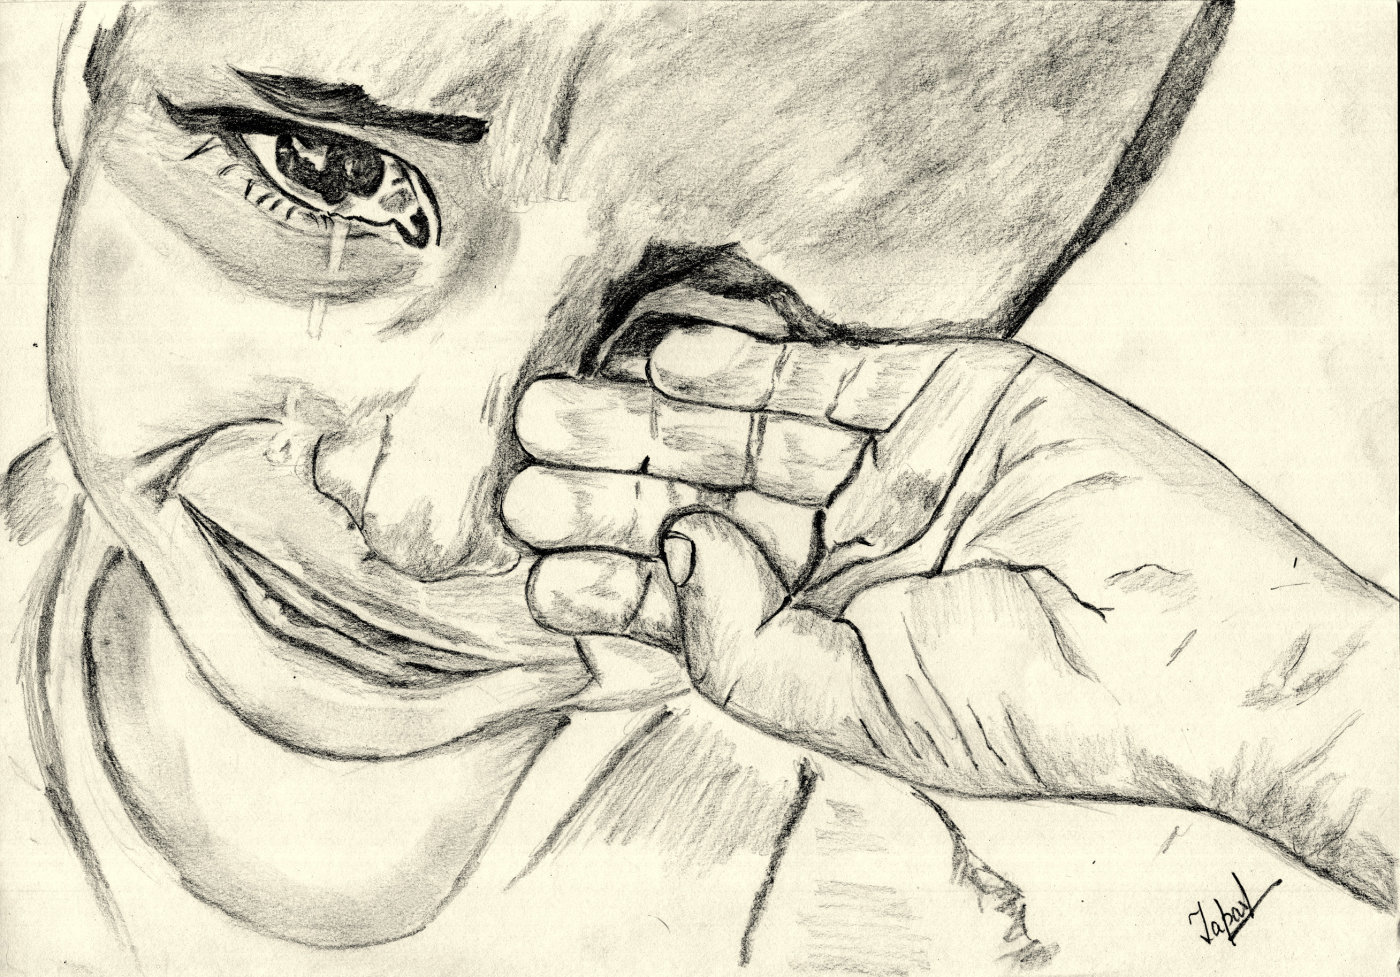 Crying Poor Boy - Crying Boy Sketch. 